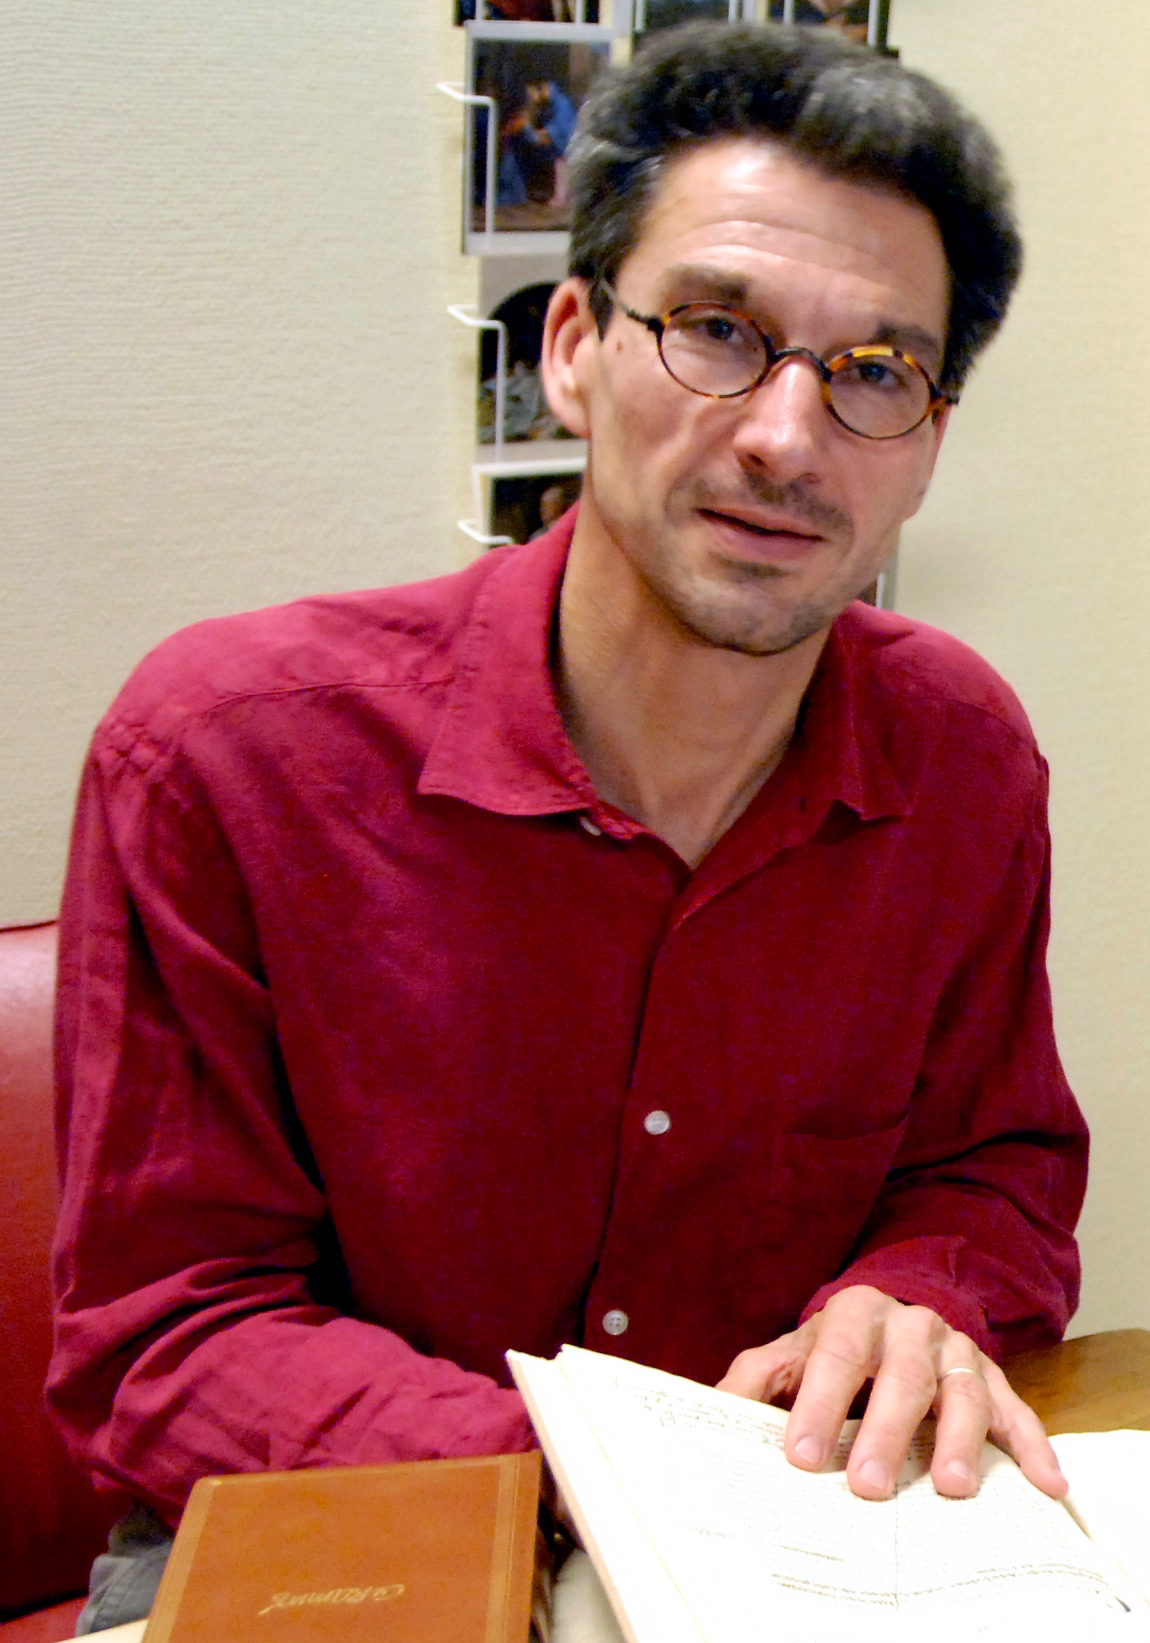 Der Daniel Maggetti redt über d Herusgäbertätigkeit vom Wärch vom Ramuz, won er sech syt mehrere Jahr dermit beschäftiget (9. Novämber 2009).